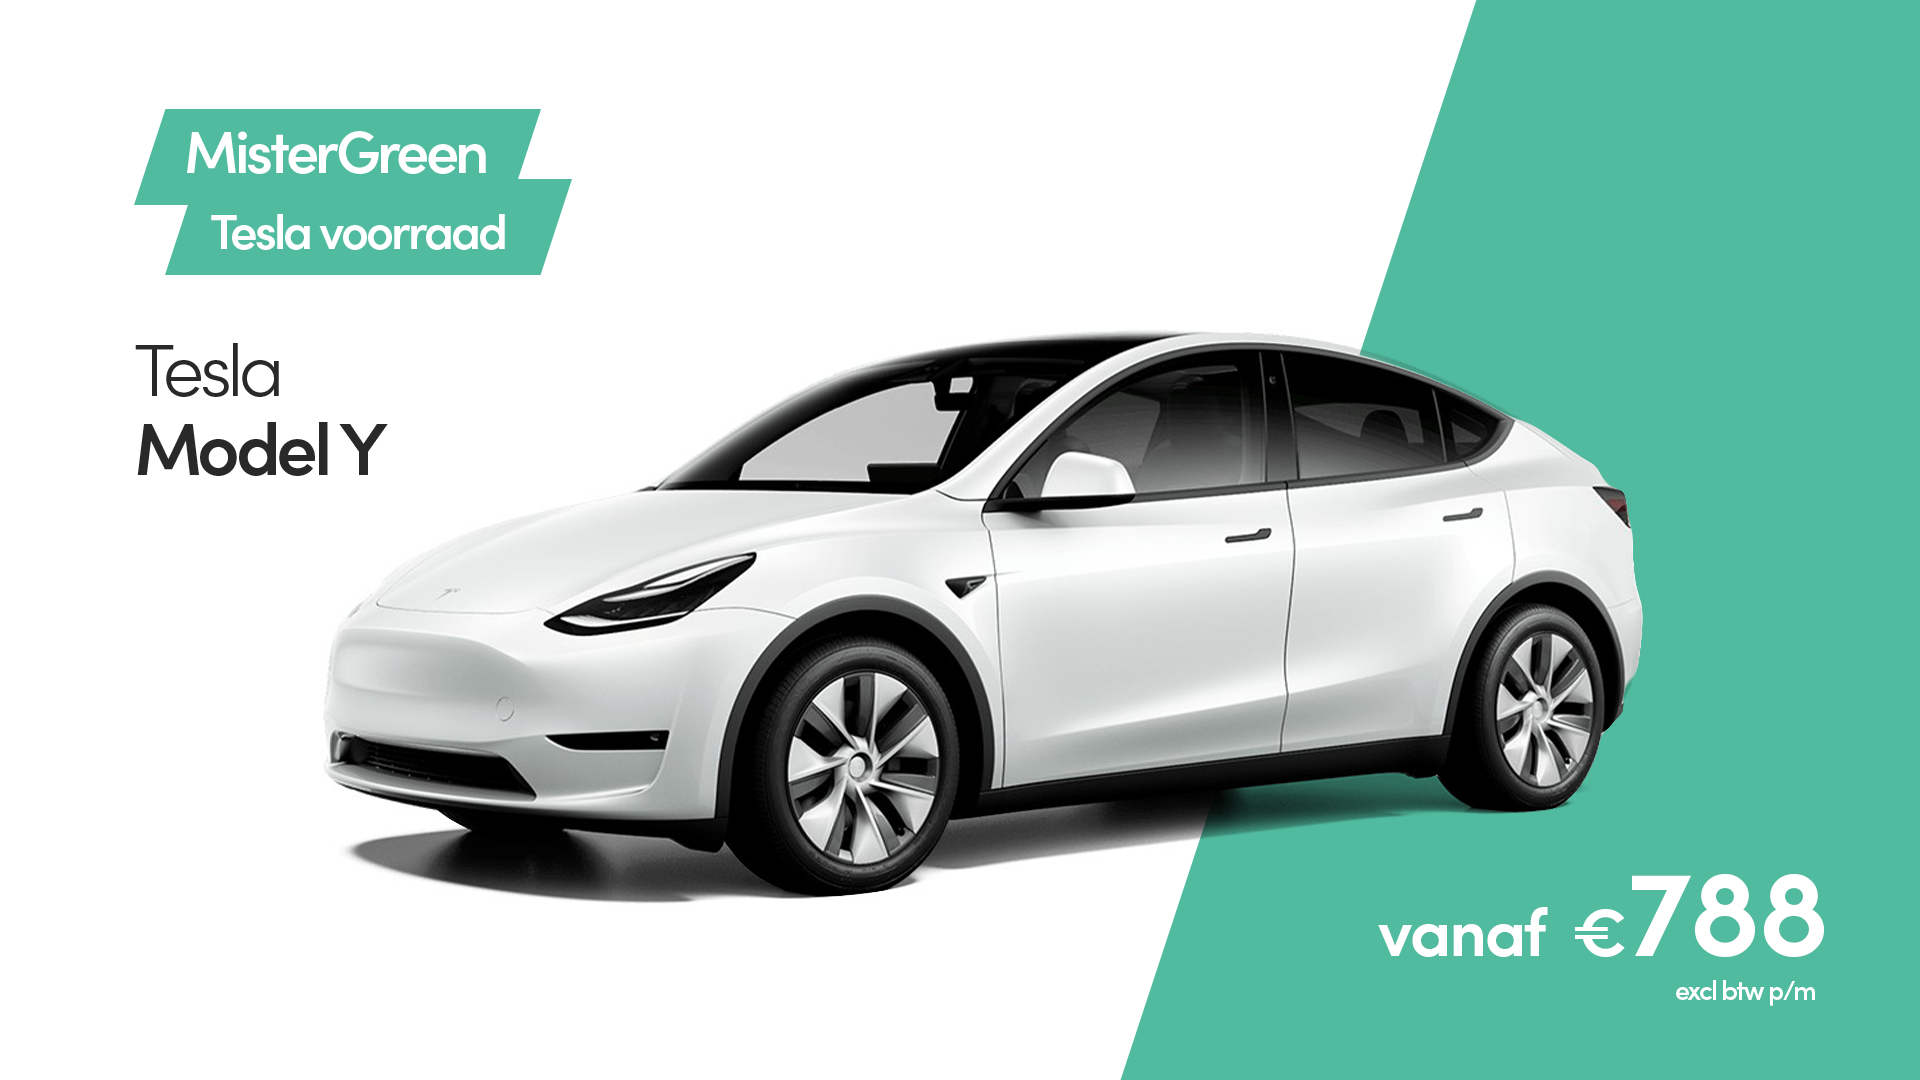 Configureer jouw Tesla met Full Self-Driving